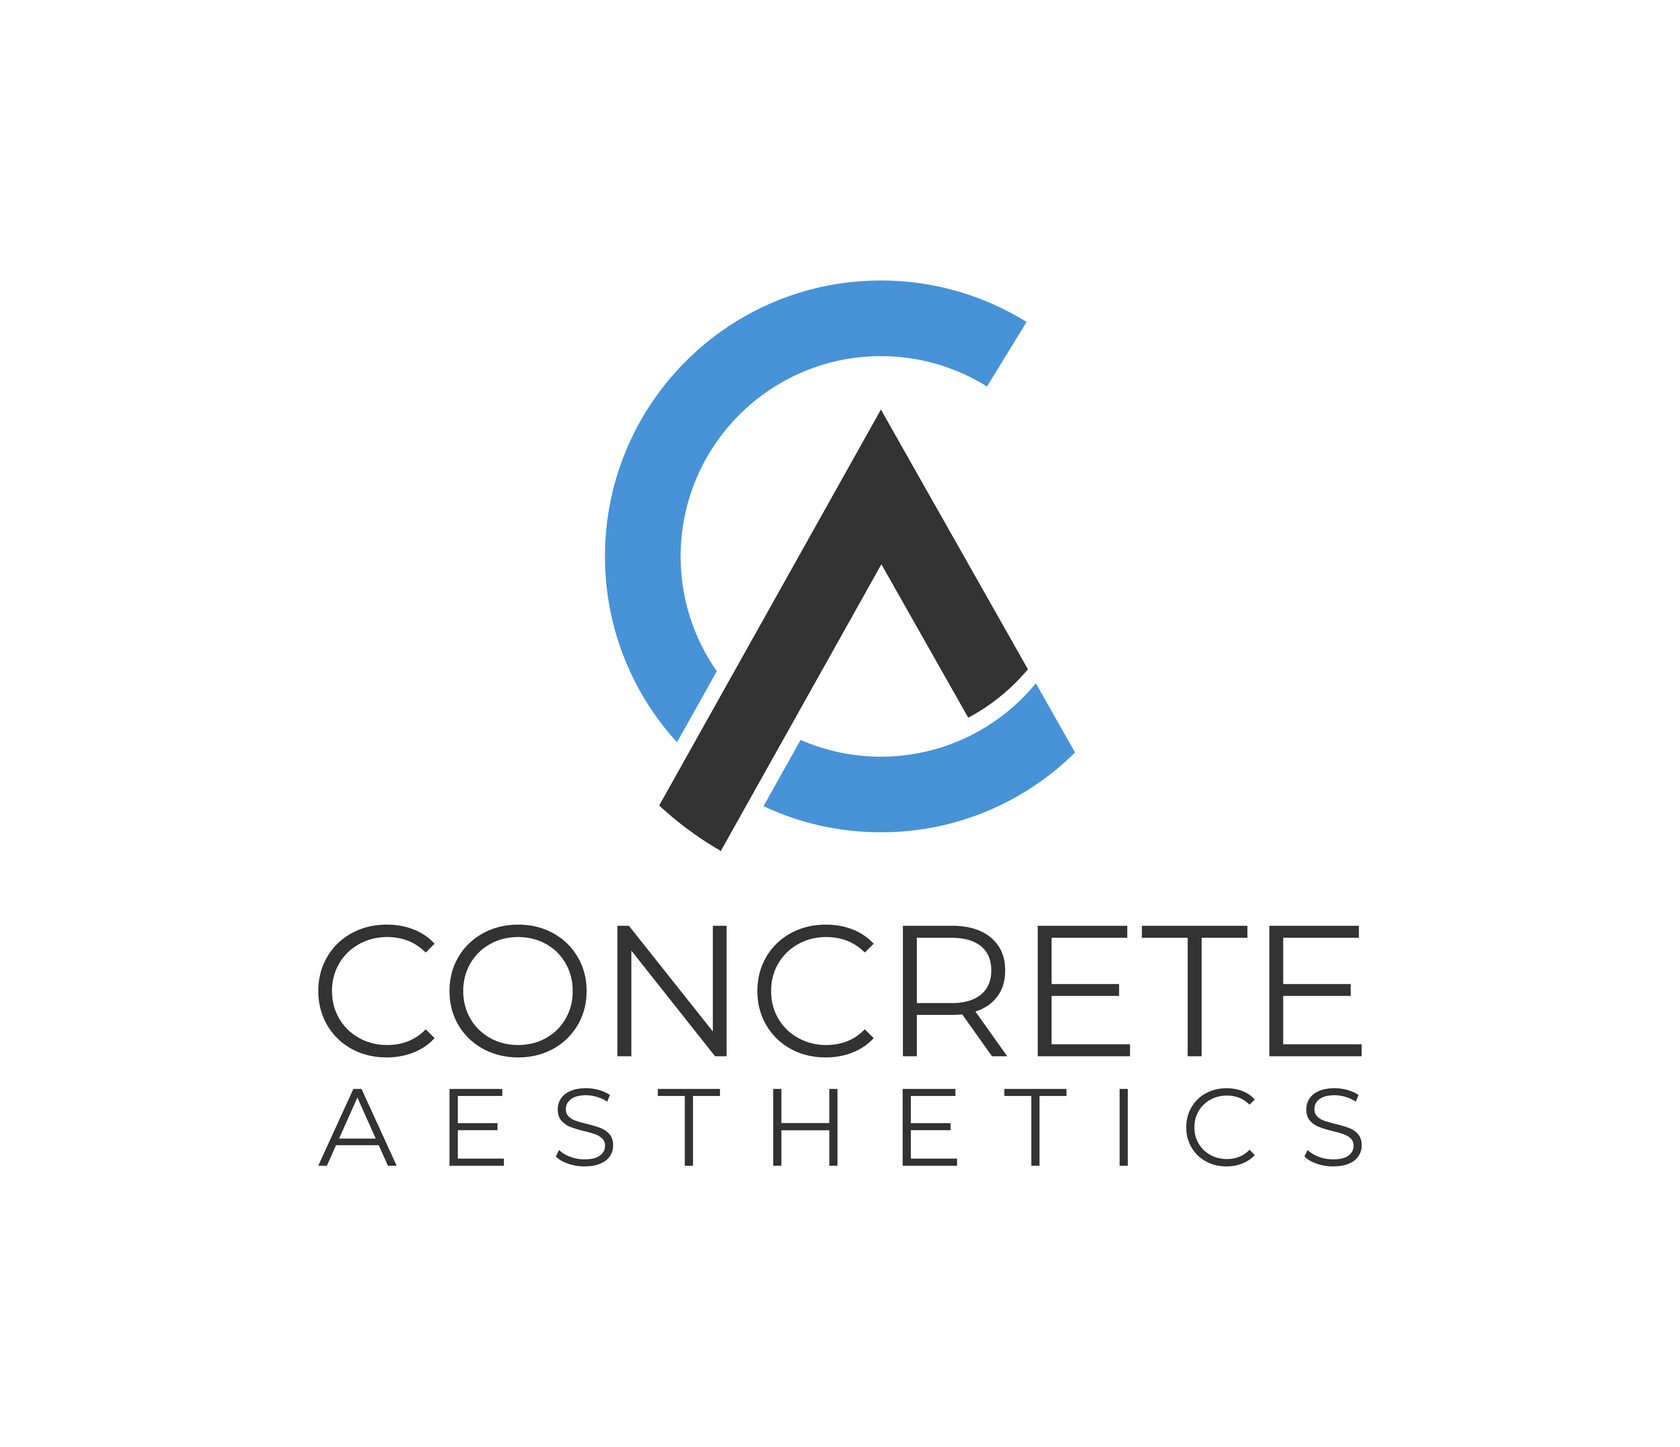 Concrete Aesthetics - производство столов, светильников, салфетниц из бетона